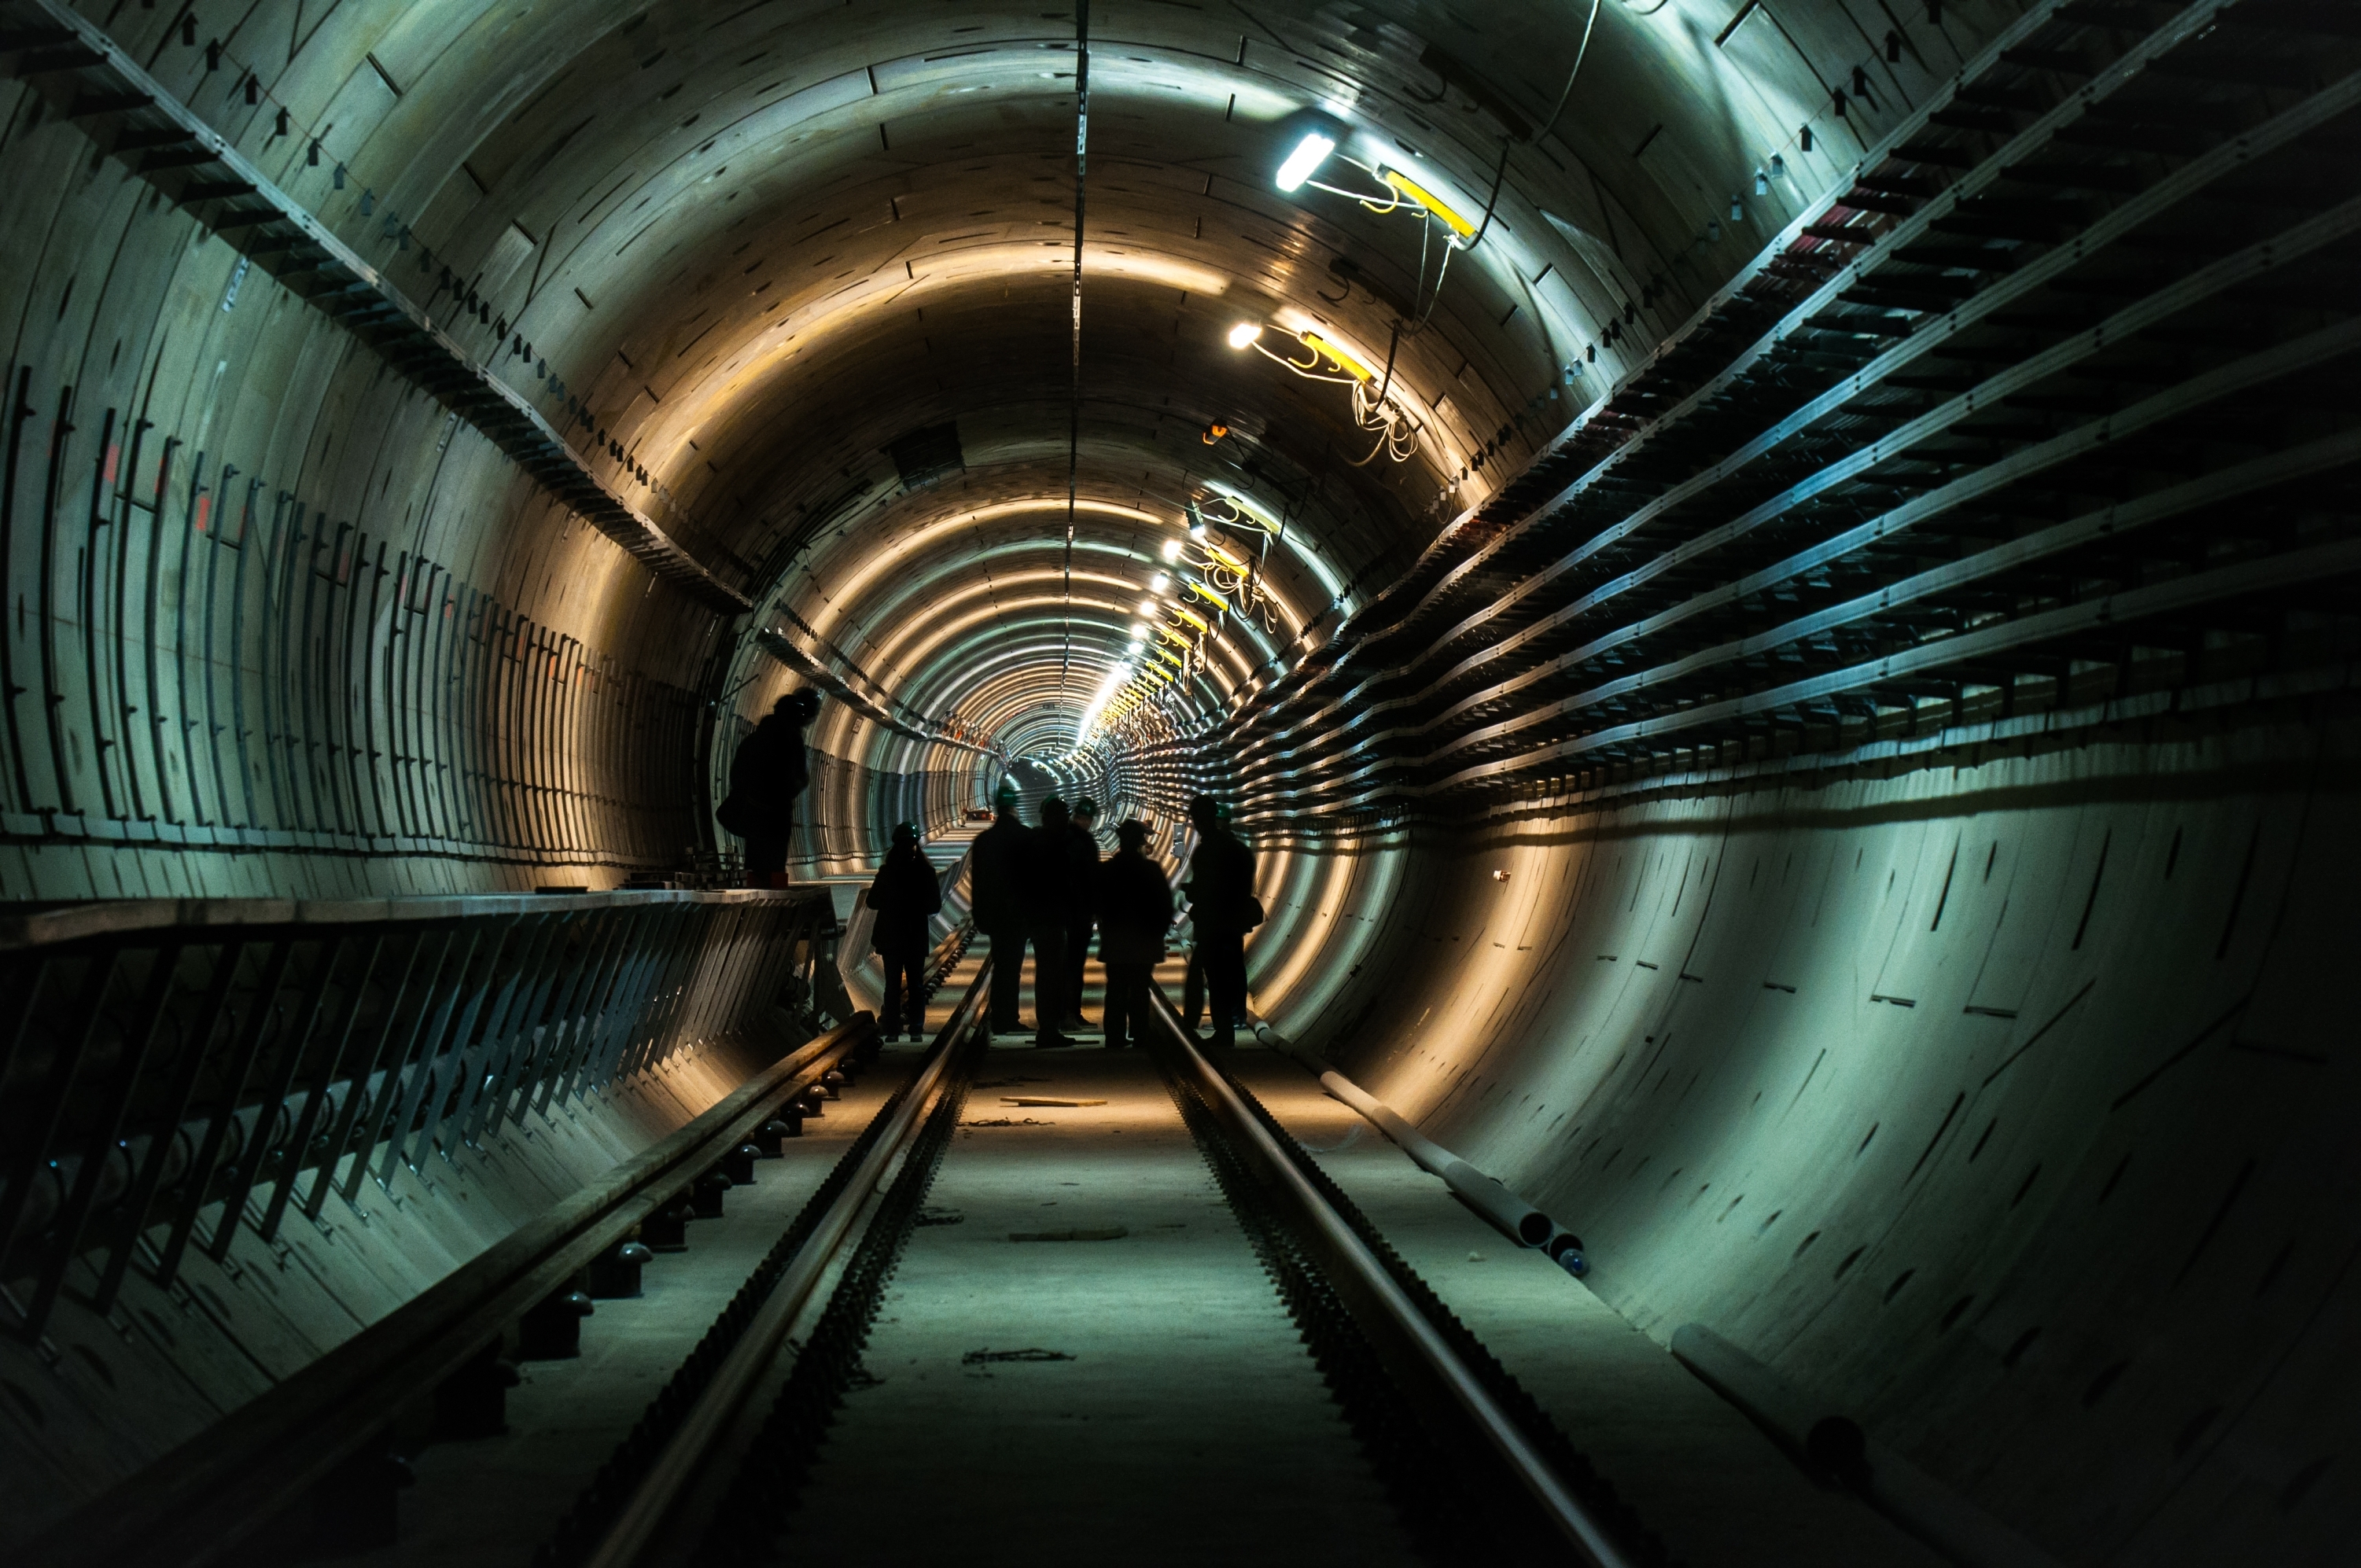 Na slici je unutrašnjost delimično osvetljenog kružnog tunela sa zidnim instalacijama u kome se nalazi nekoliko inspektora.